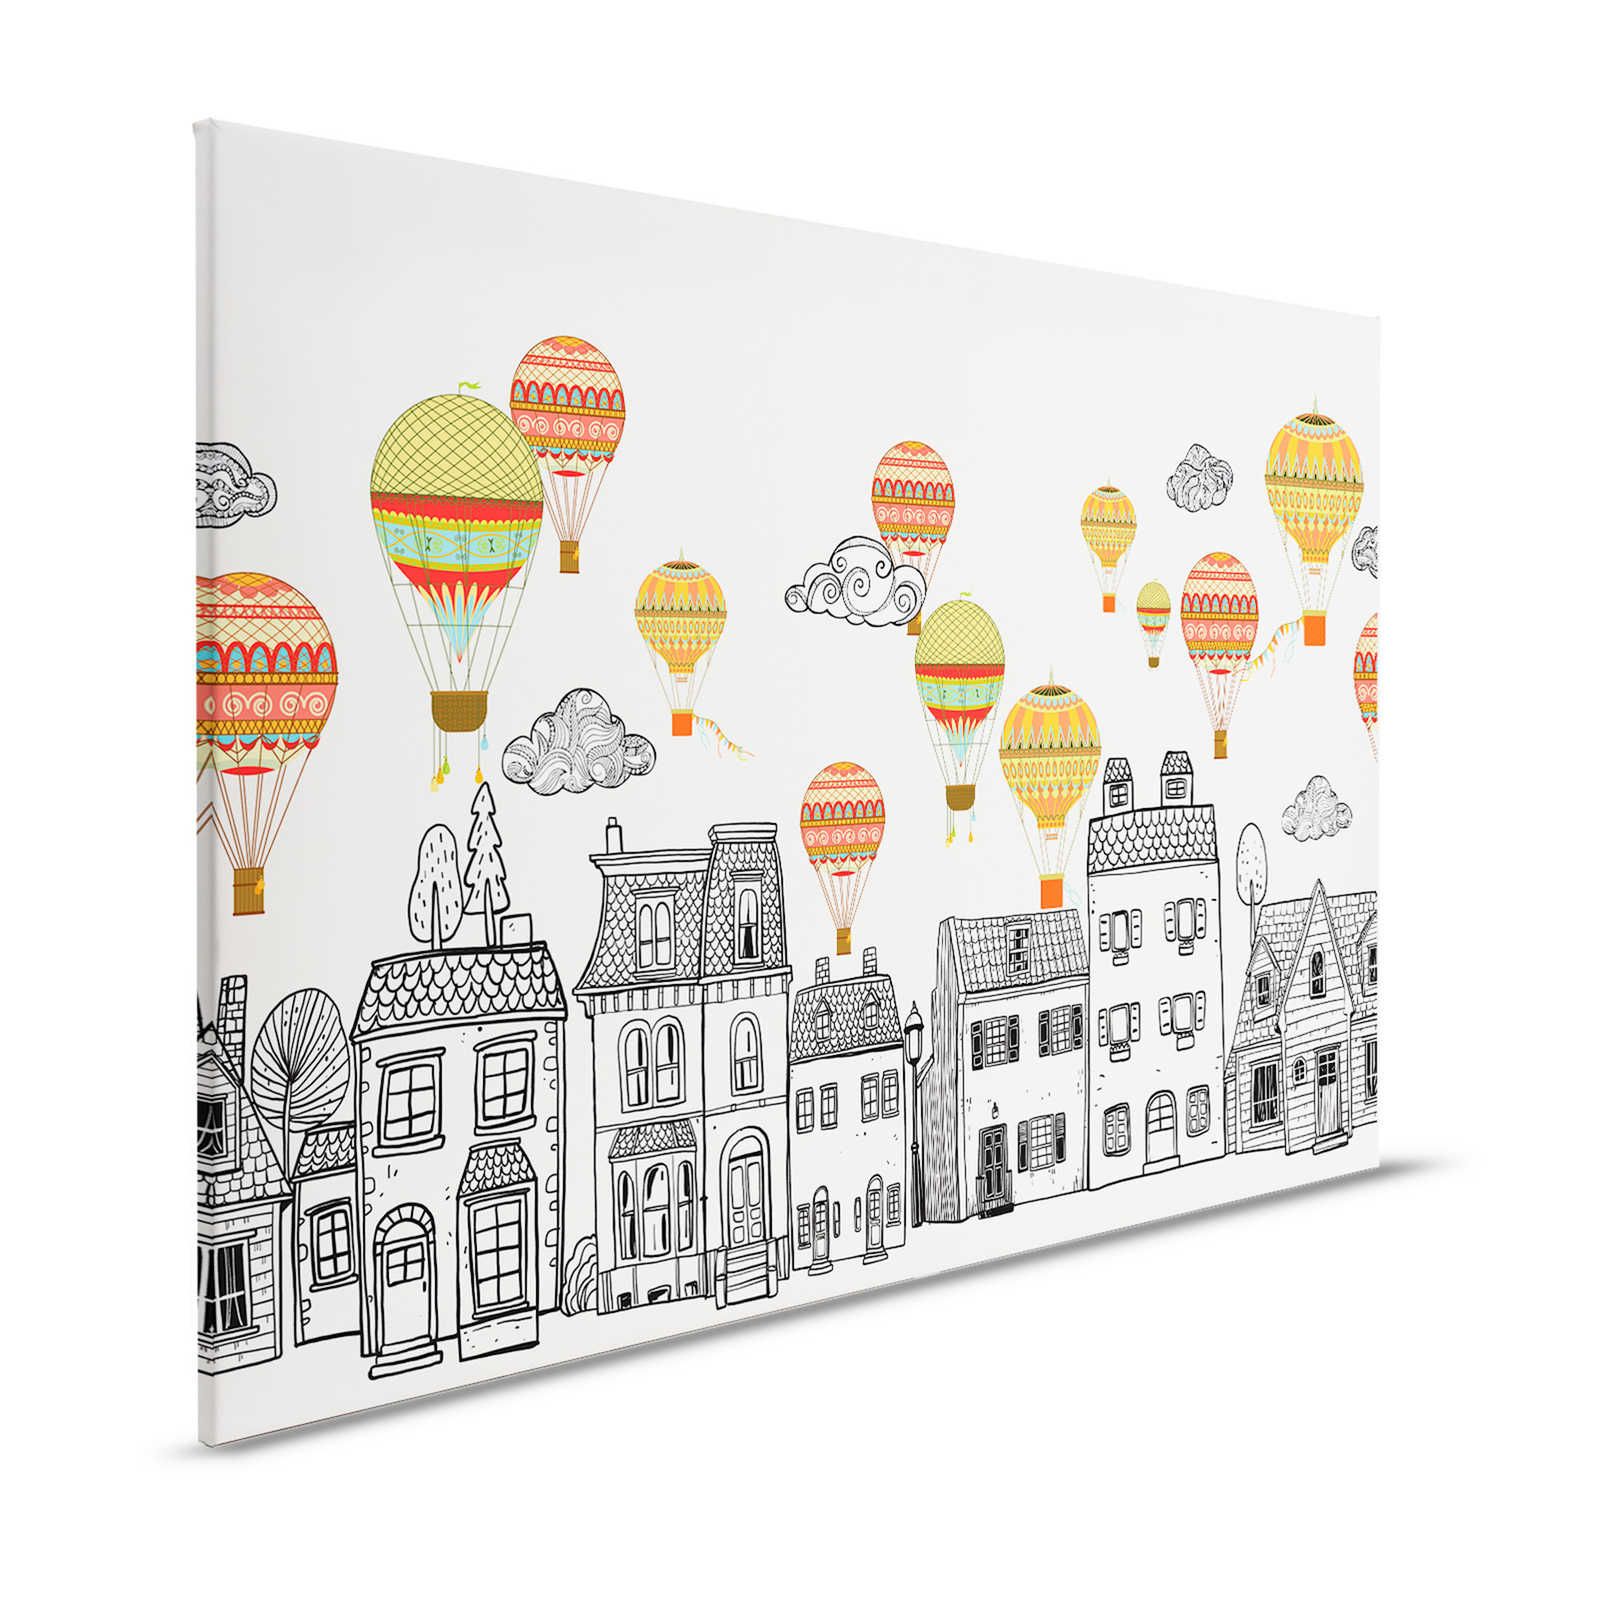 Leinwand Kleinstadt mit Heißluftballoons – 120 cm x 80 cm
